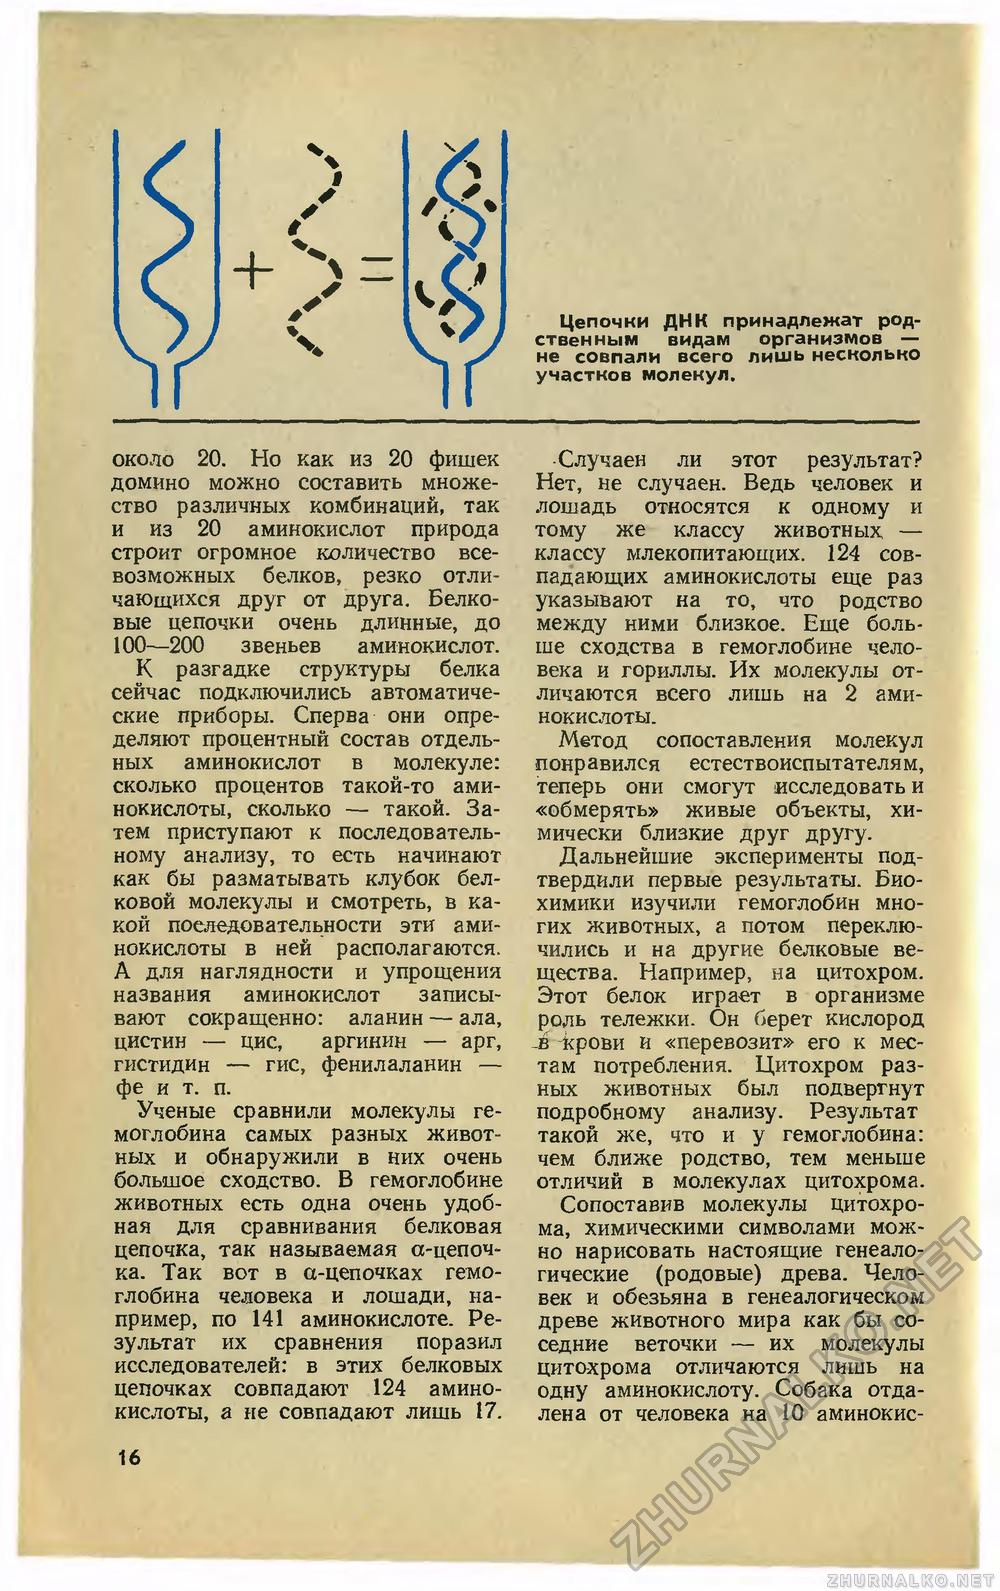   1972-02,  18